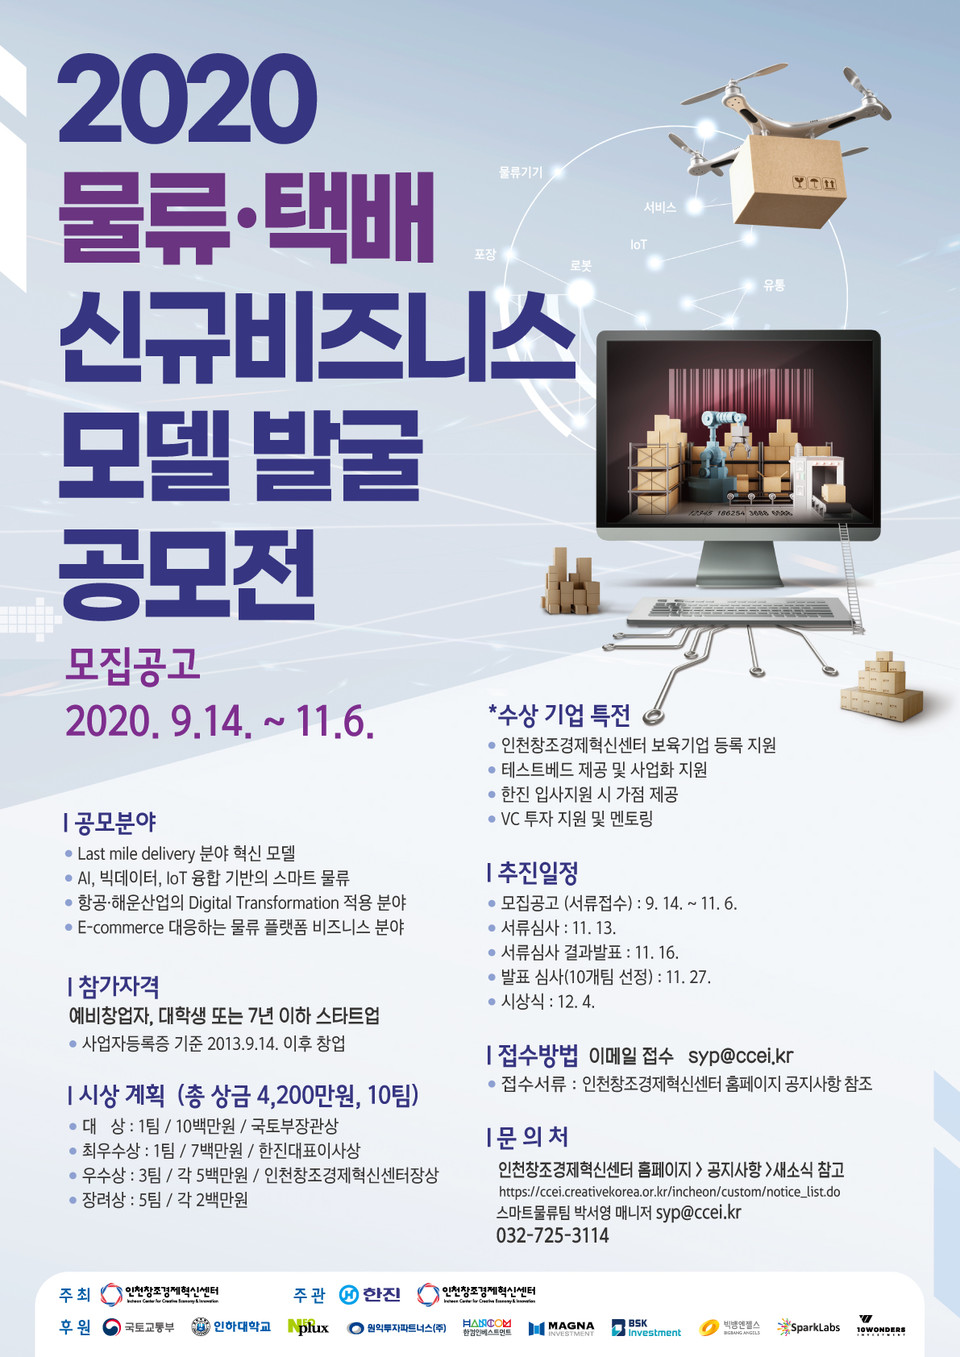 ‘2020 제6회 스마트물류 창업공모전' 포스터. (출처: 인천창조경제혁신센터)